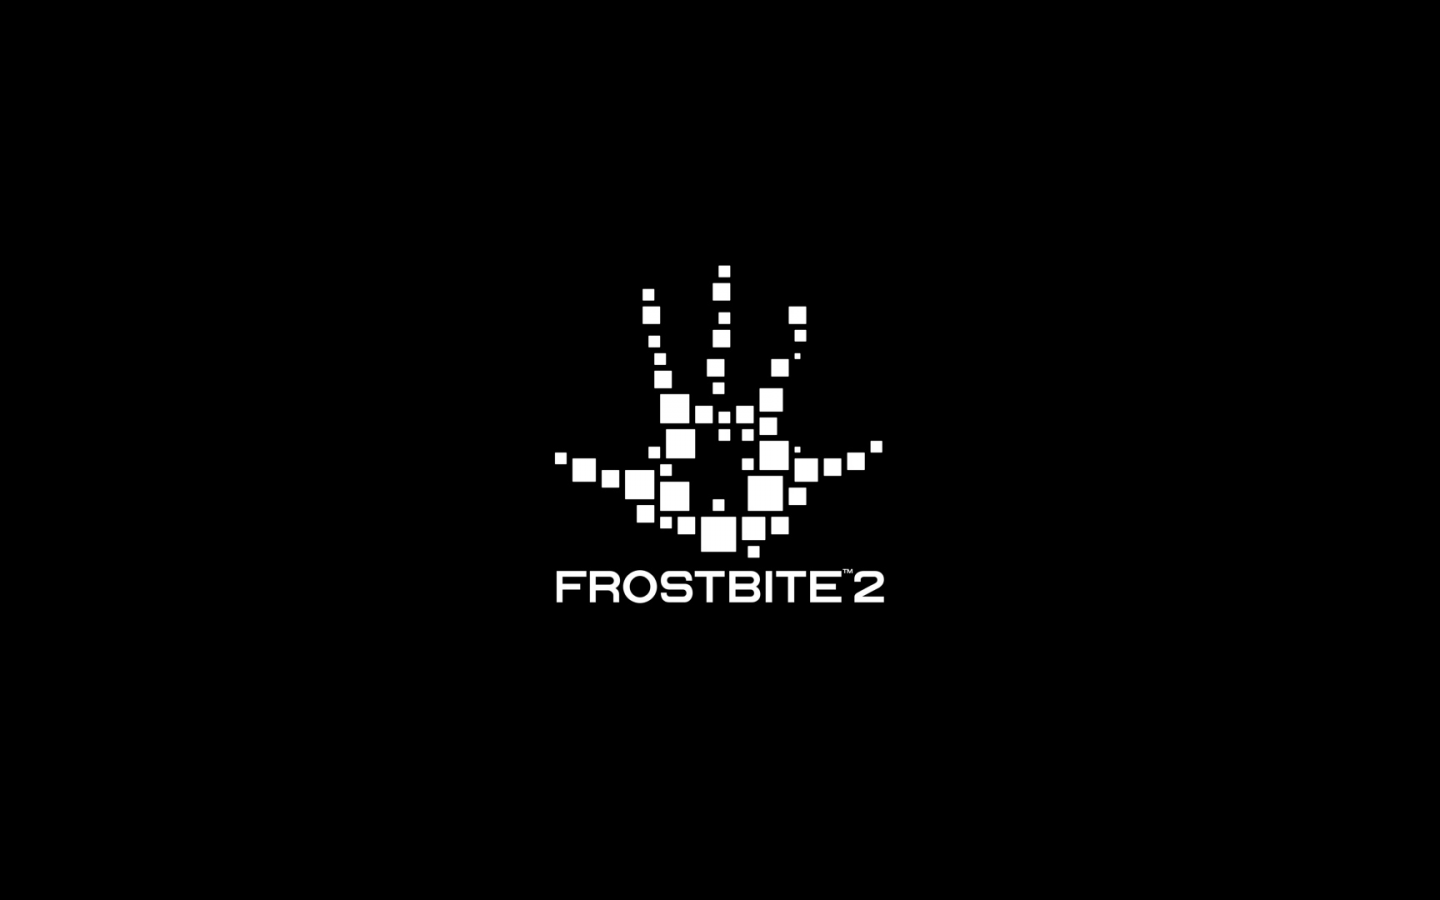 ea, эмблема, frostbite 2, логотип, tm, лого, dice, Battlefield 3